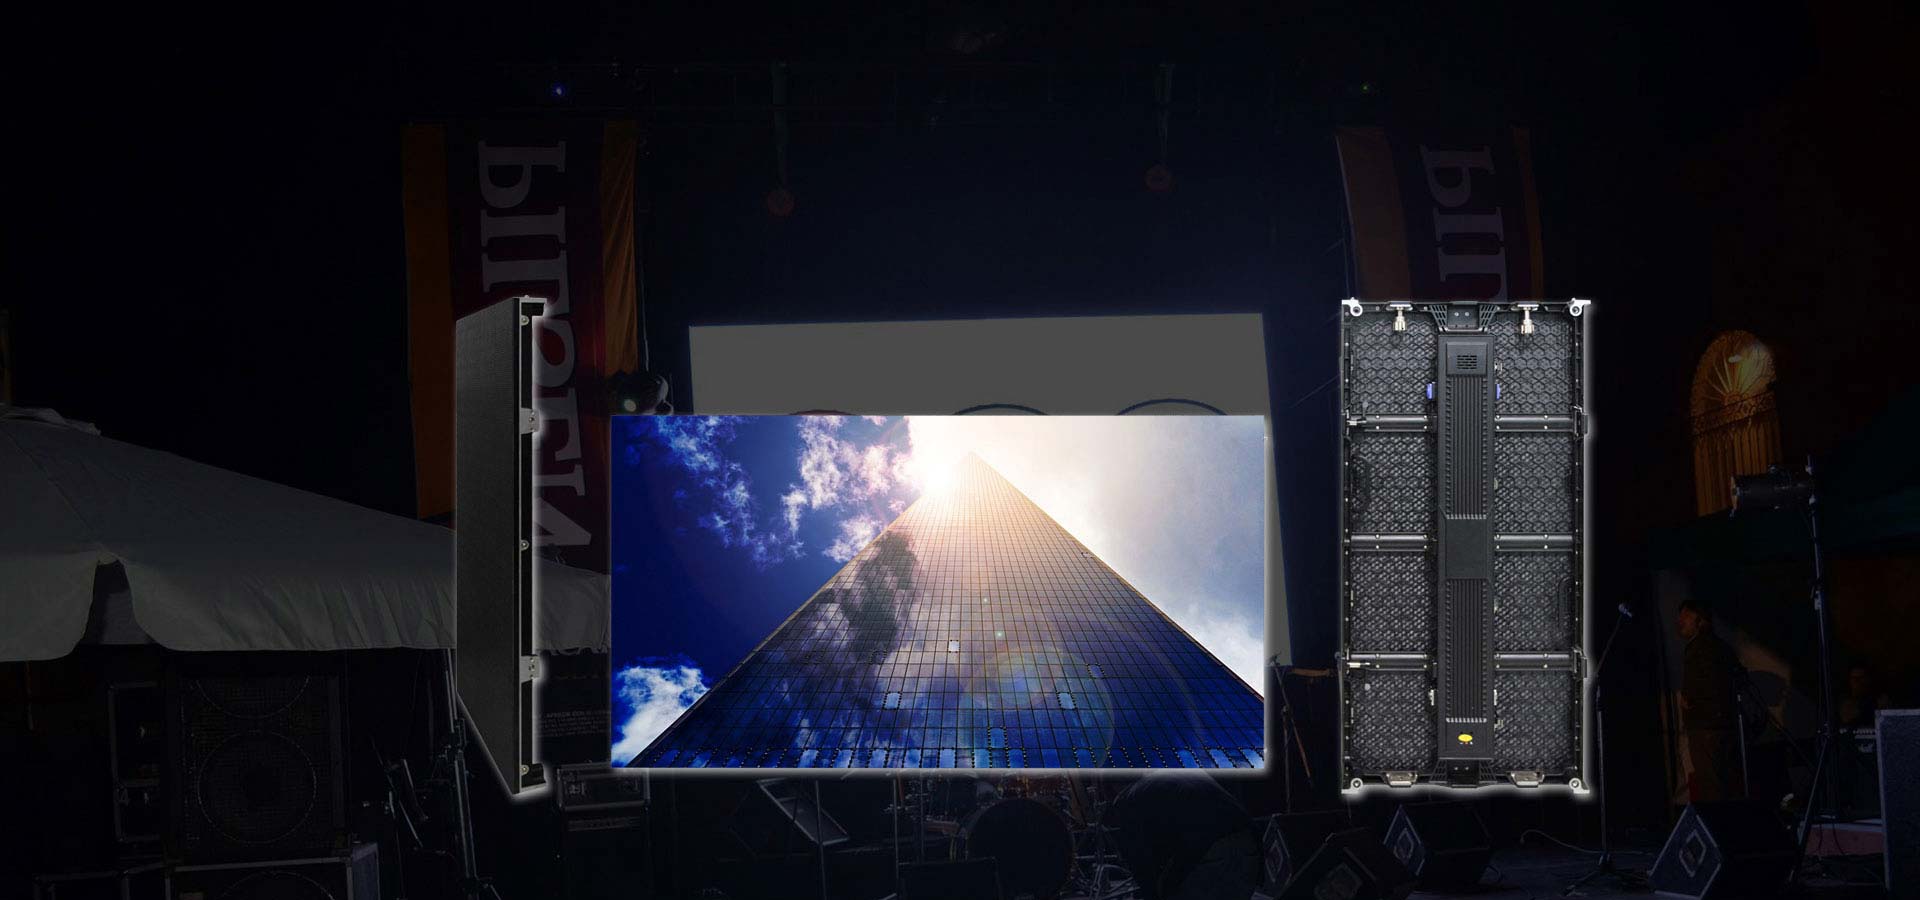 未來的小間距LED顯示屏將如何發展?918博天堂